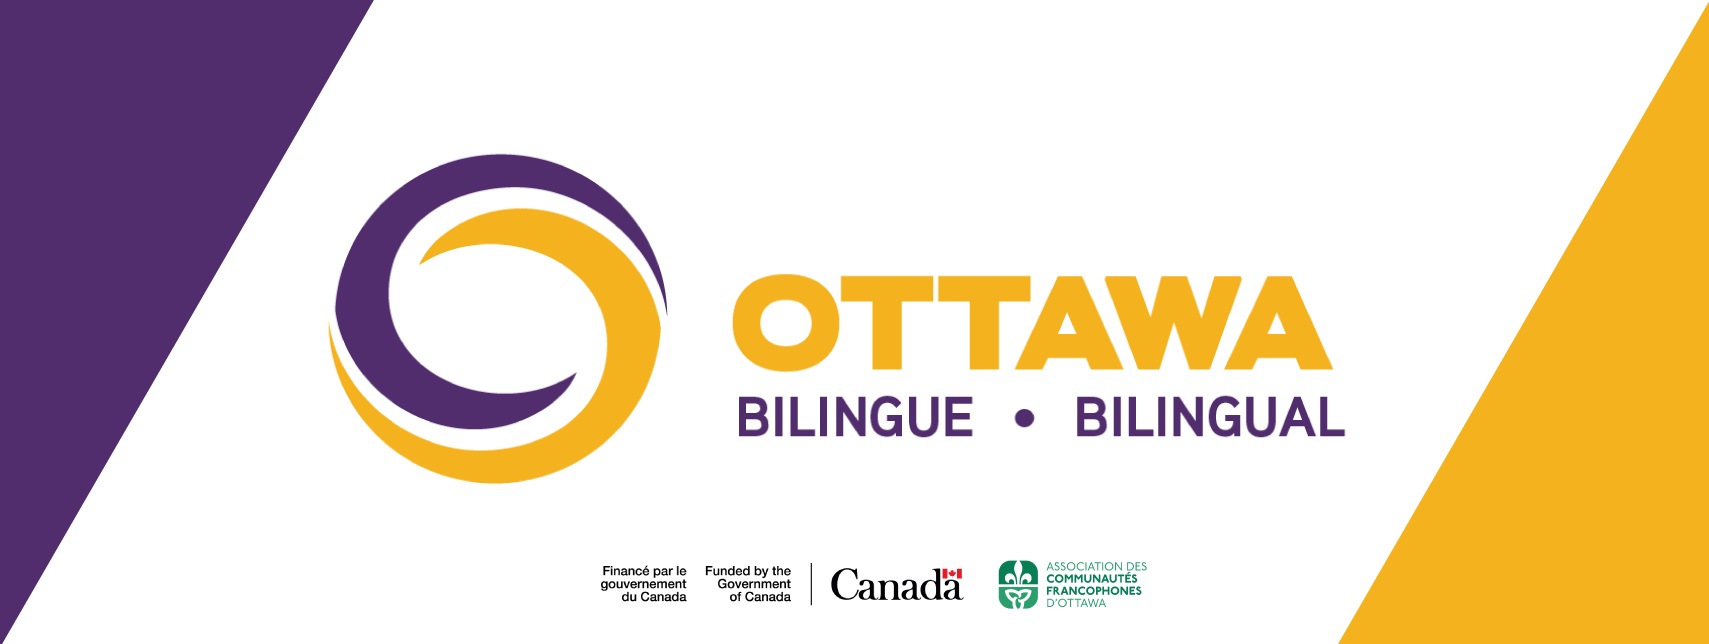 Le programme a été renouvelé par le gouvernement du Canada, à travers le Plan d’action pour les langues officielles de Patrimoine canadien. Photo: gratuitite du site Afco.ca